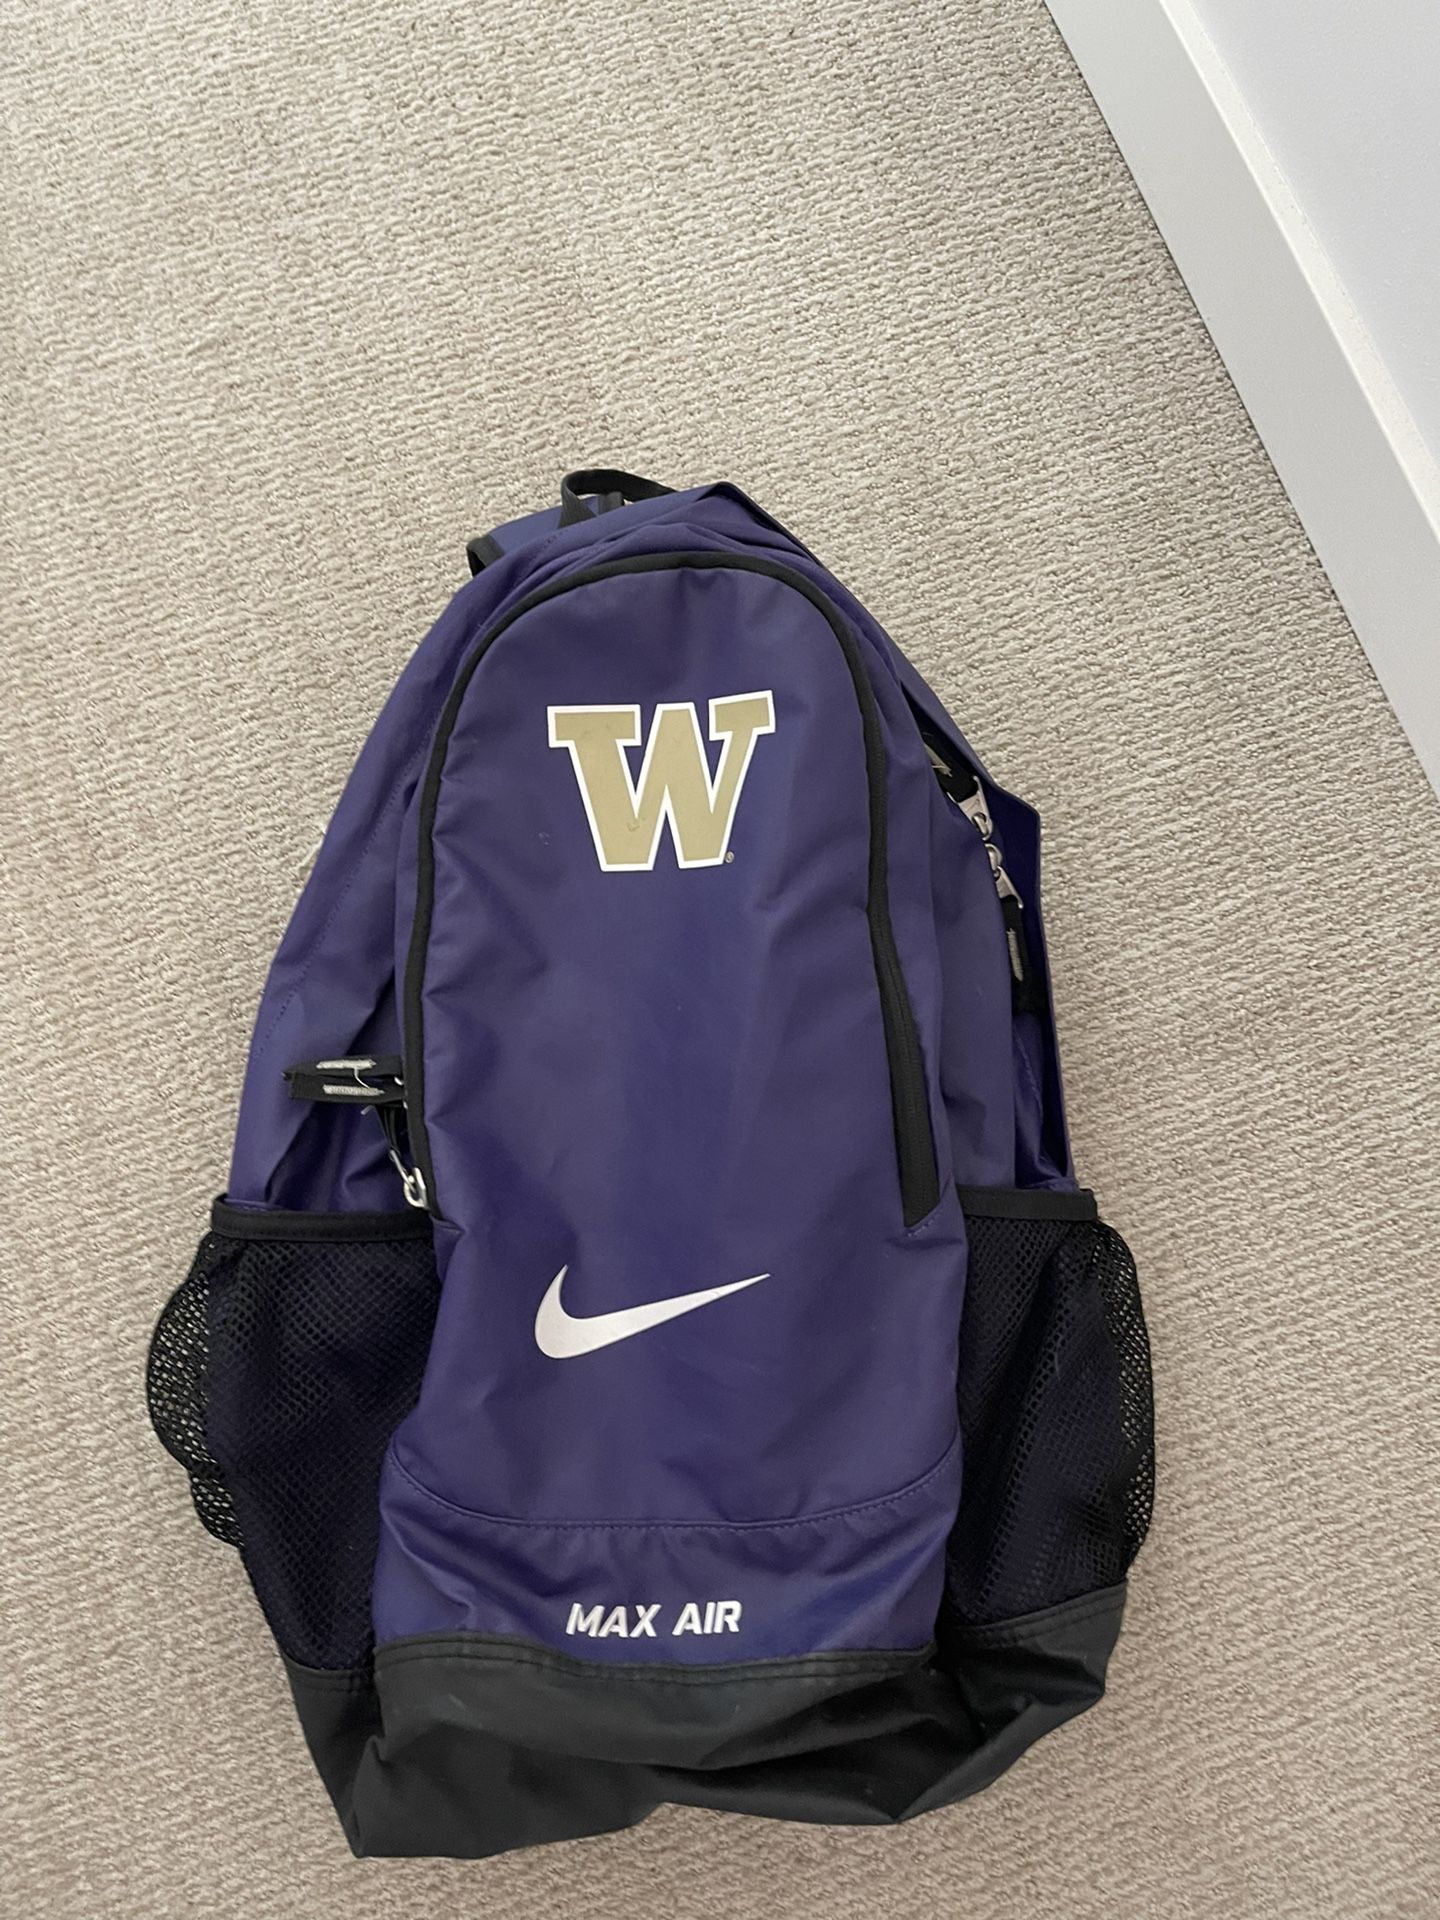 Sport Pebish Enten UW Nike Backpack for Sale in Seattle, WA - OfferUp